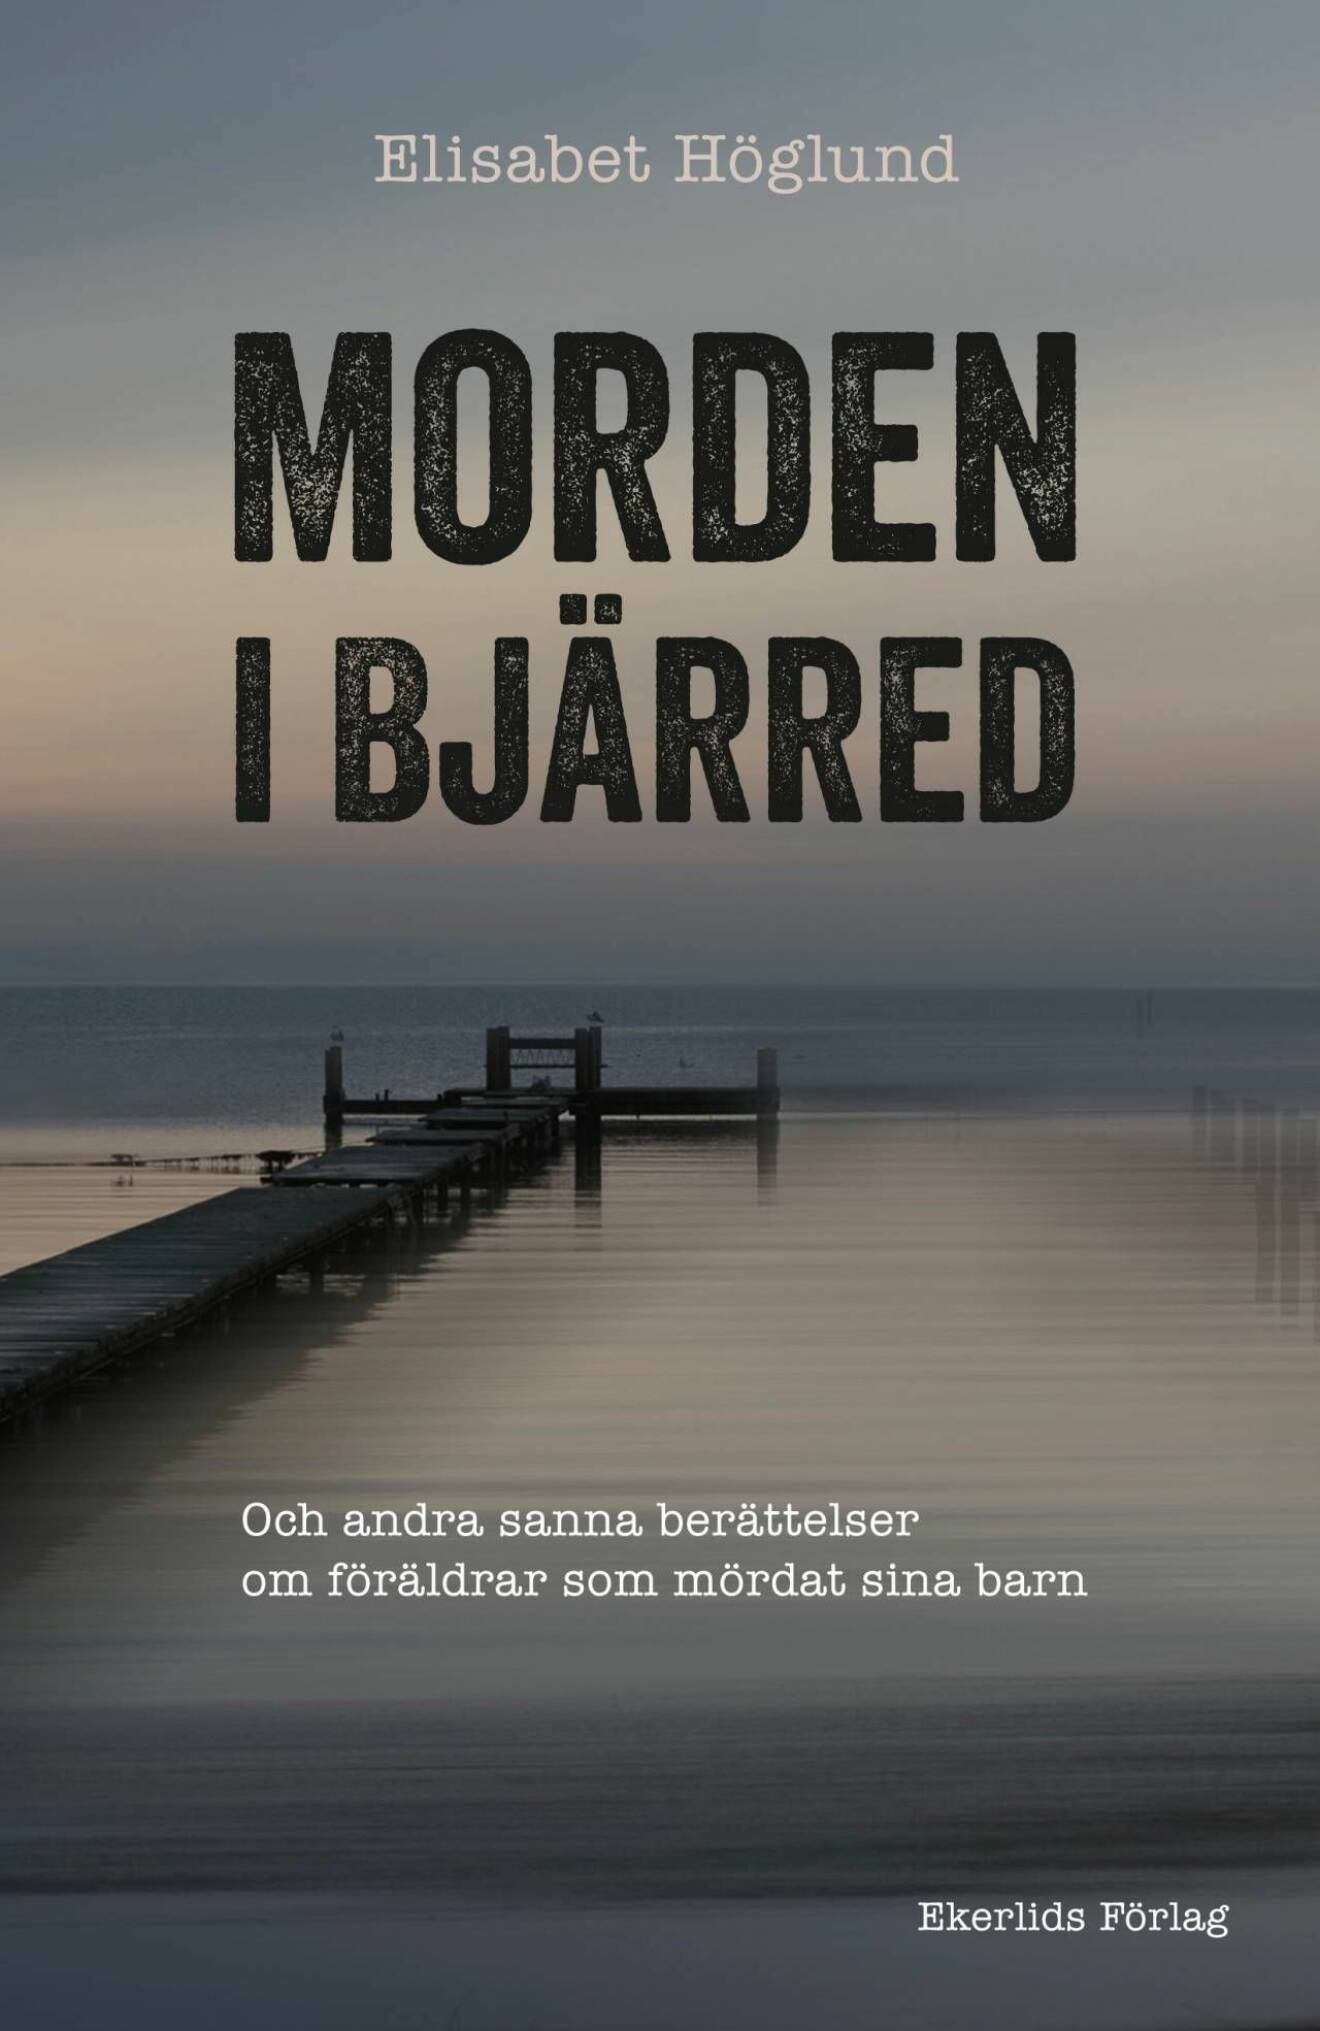 Omslag till Elisabet Höglunds bok ”Morden i Bjärred”